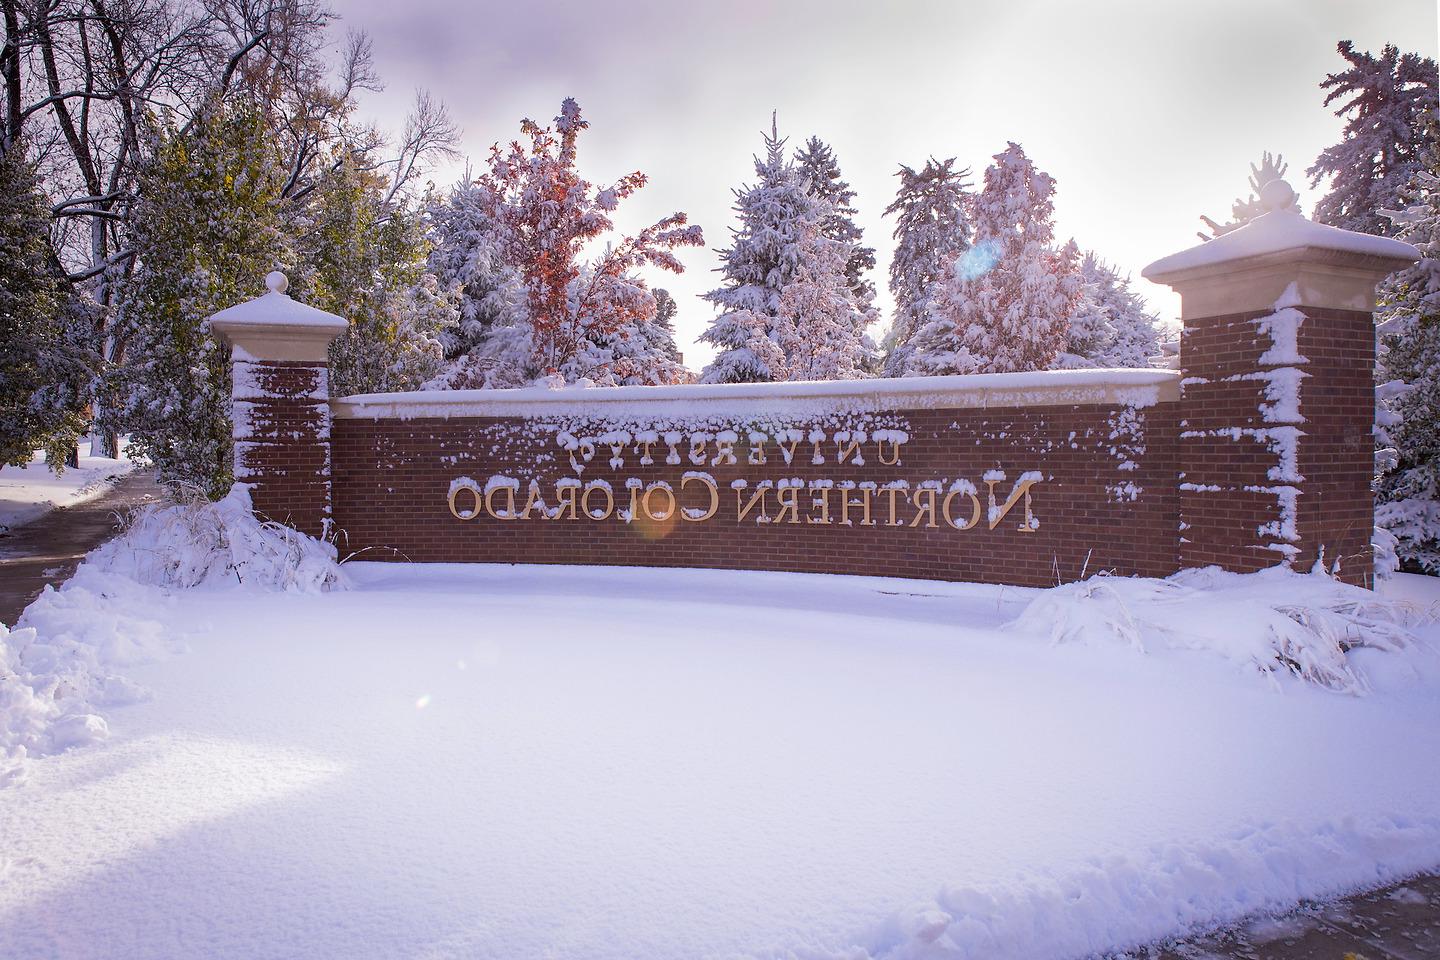 皇冠app官方版下载主校区的标志被雪覆盖